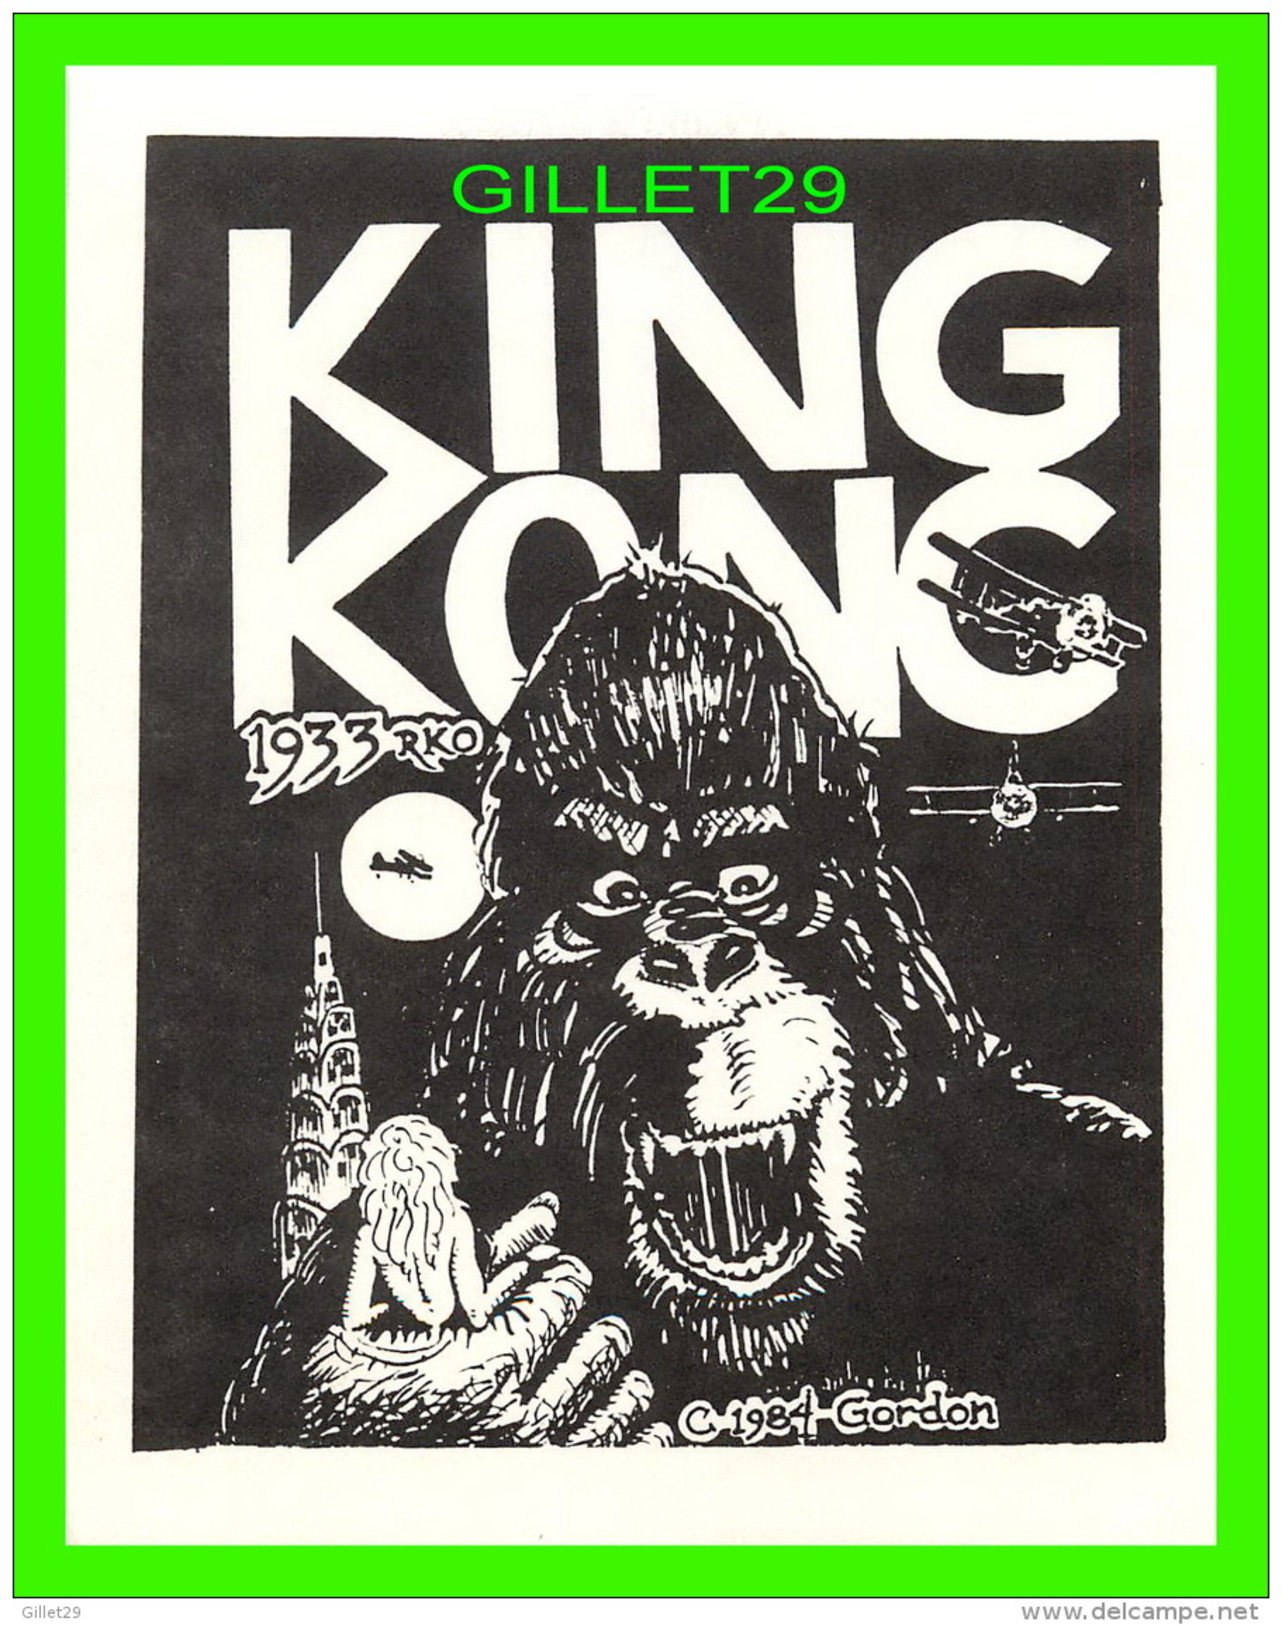 AFFICHE DE FILM - KING KONG , 1933 RKO - 1984 GORDON -  MOVIE MONSTER GREATS - UNICORN STUDIOS - - Affiches Sur Carte